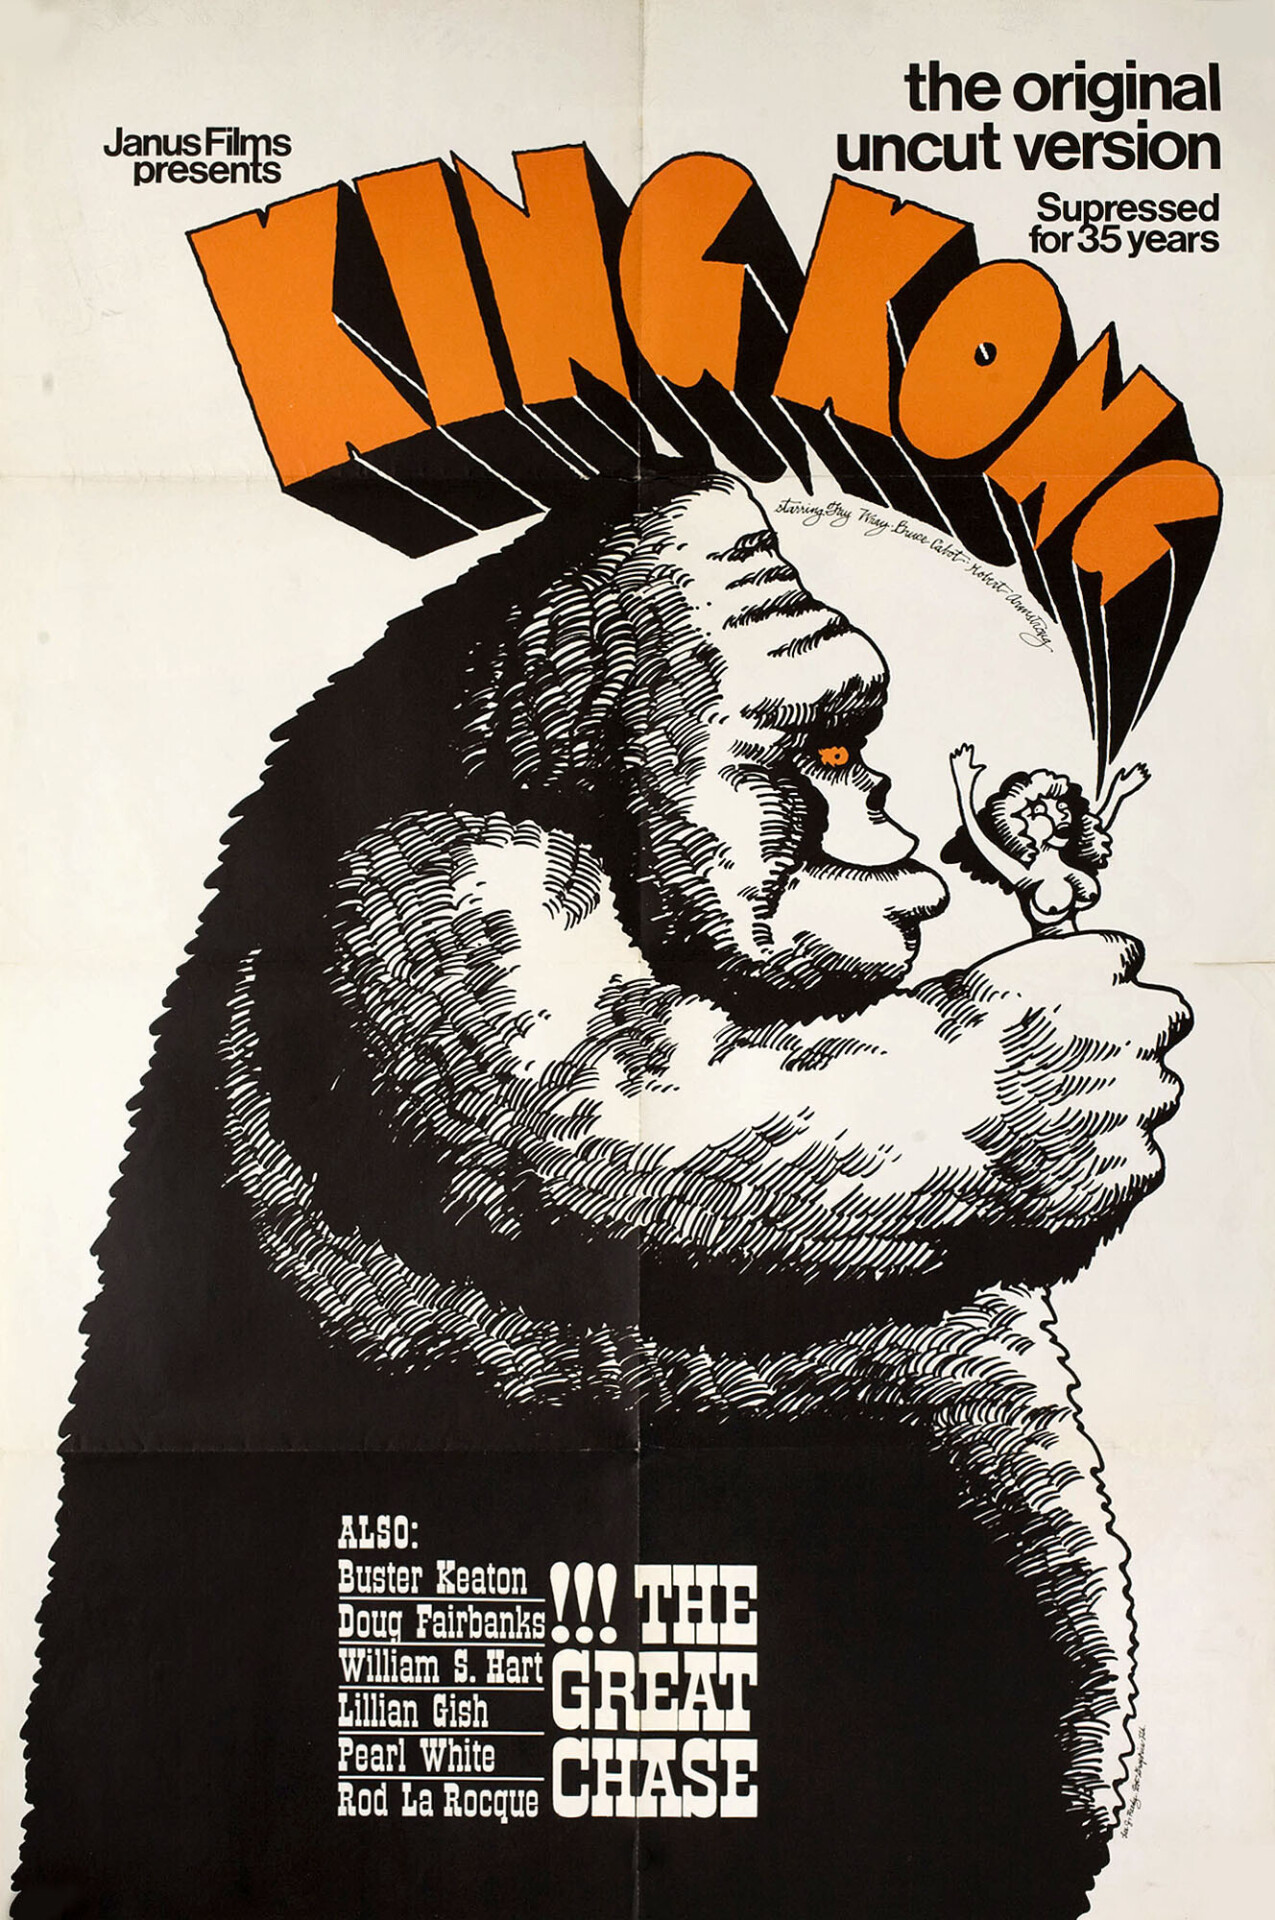 Кинг Конг (King Kong, 1933), режиссёр Мериан К. Купер, американский постер к фильму, автор Ли Дж. Риди (монстры, 1967 год)